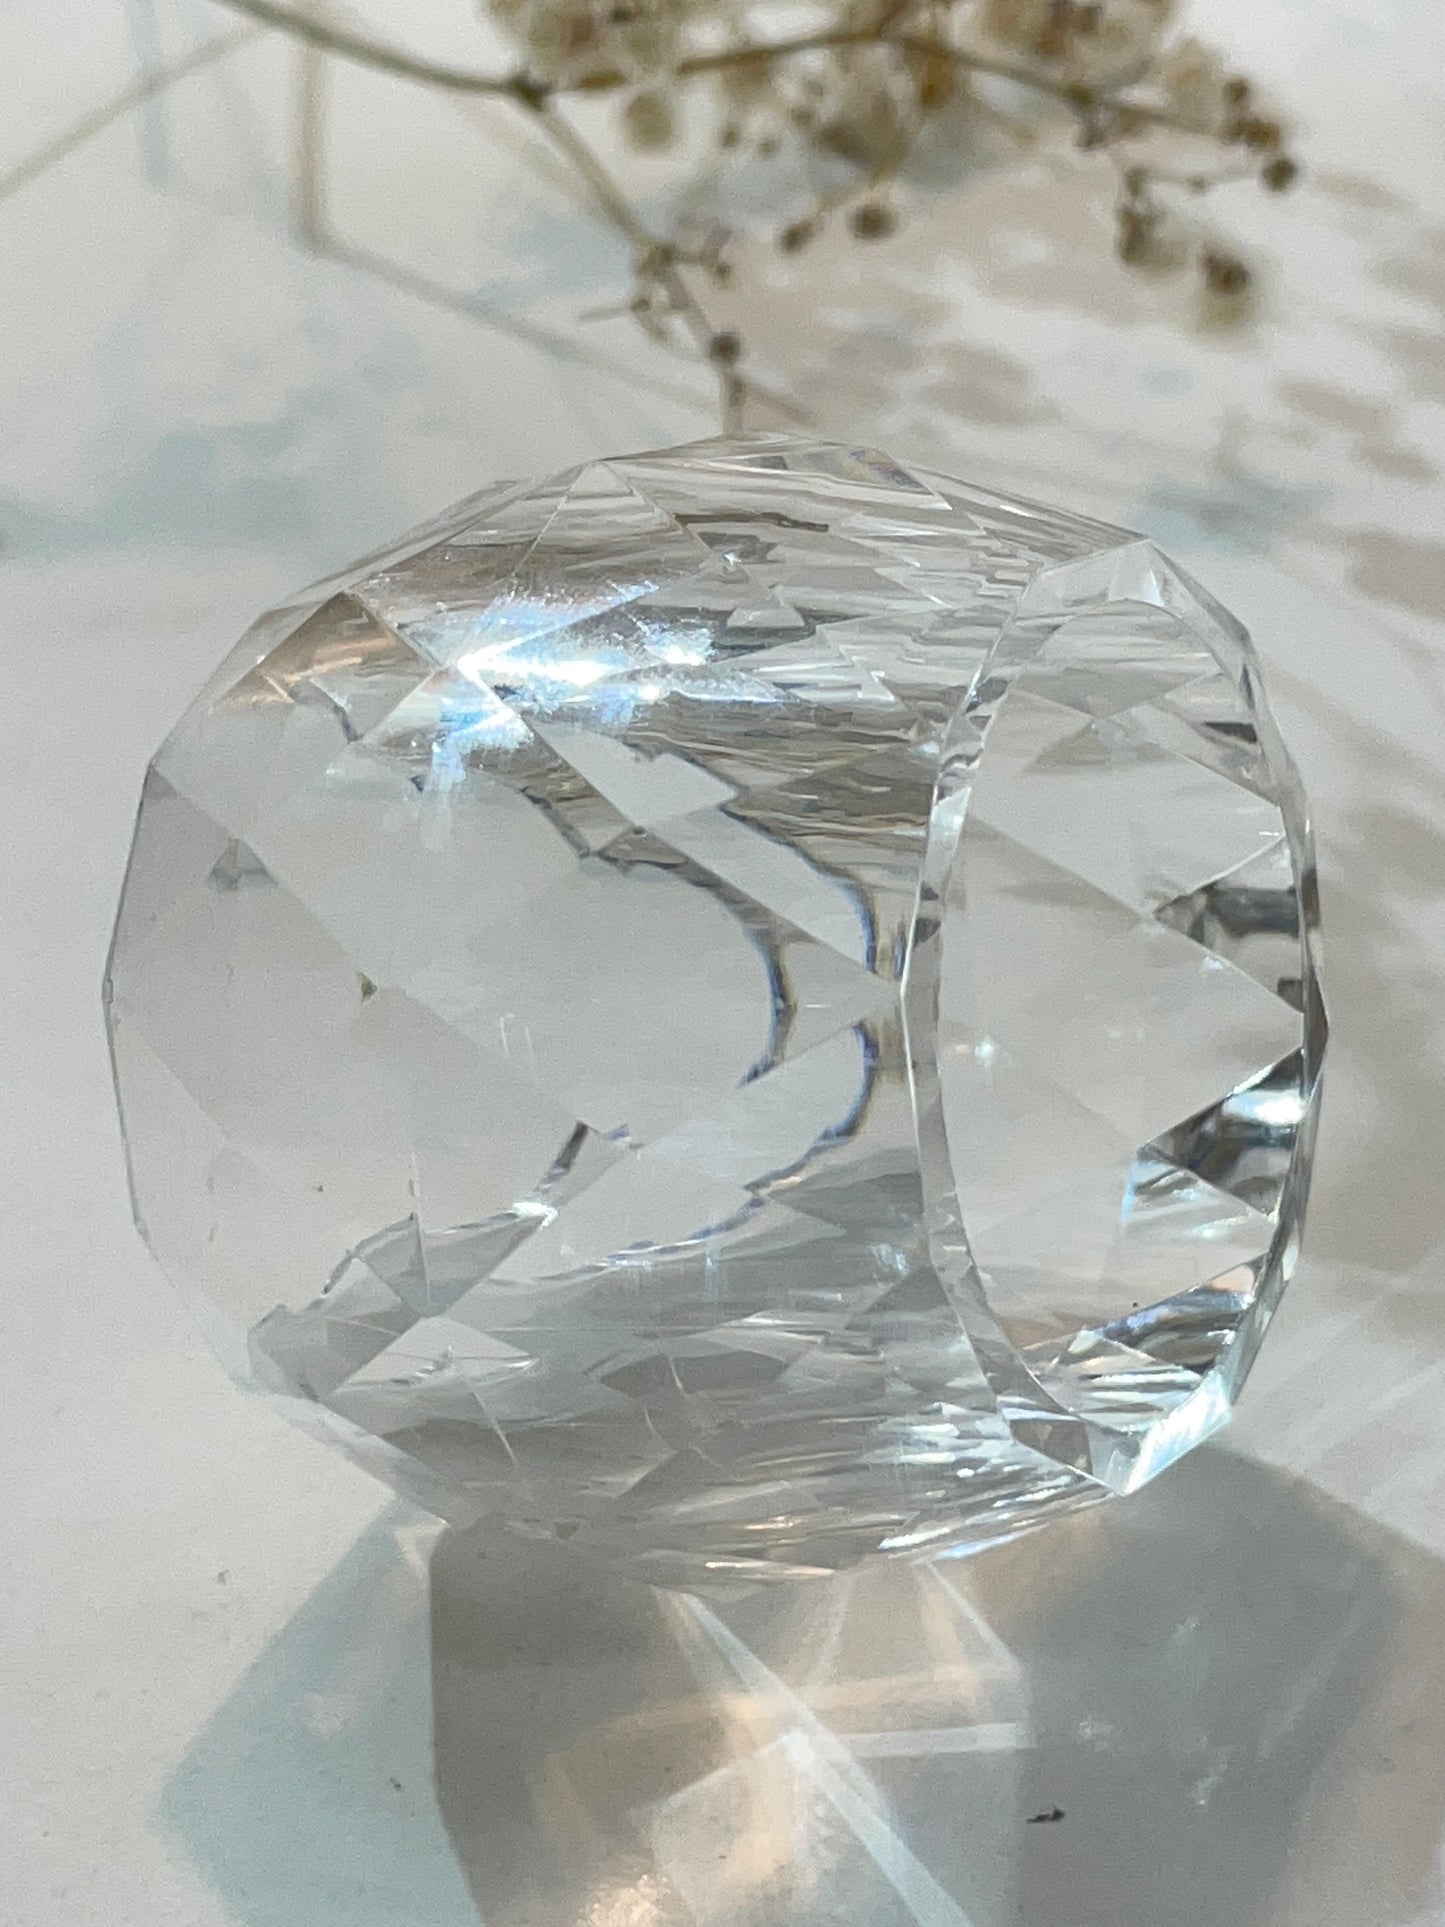 Kristallring-Servietten: Silikonform für elegante Tischdekoration